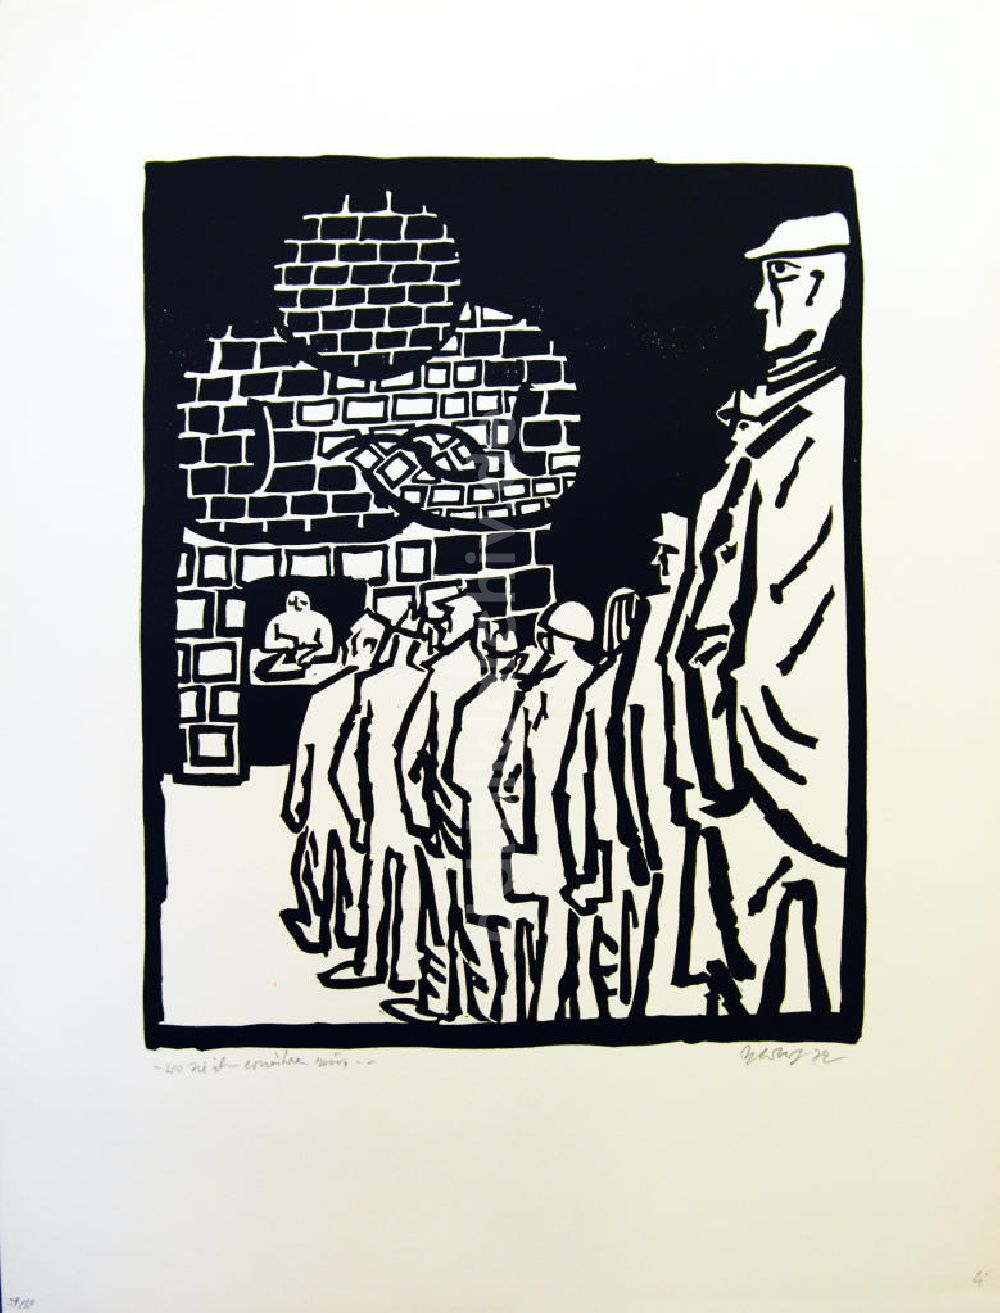 DDR-Fotoarchiv: Berlin - Grafik von Herbert Sandberg Motiv 21 aus dem Zyklus Bilder zum Kommunistischen Manifest aus dem Jahr 1972